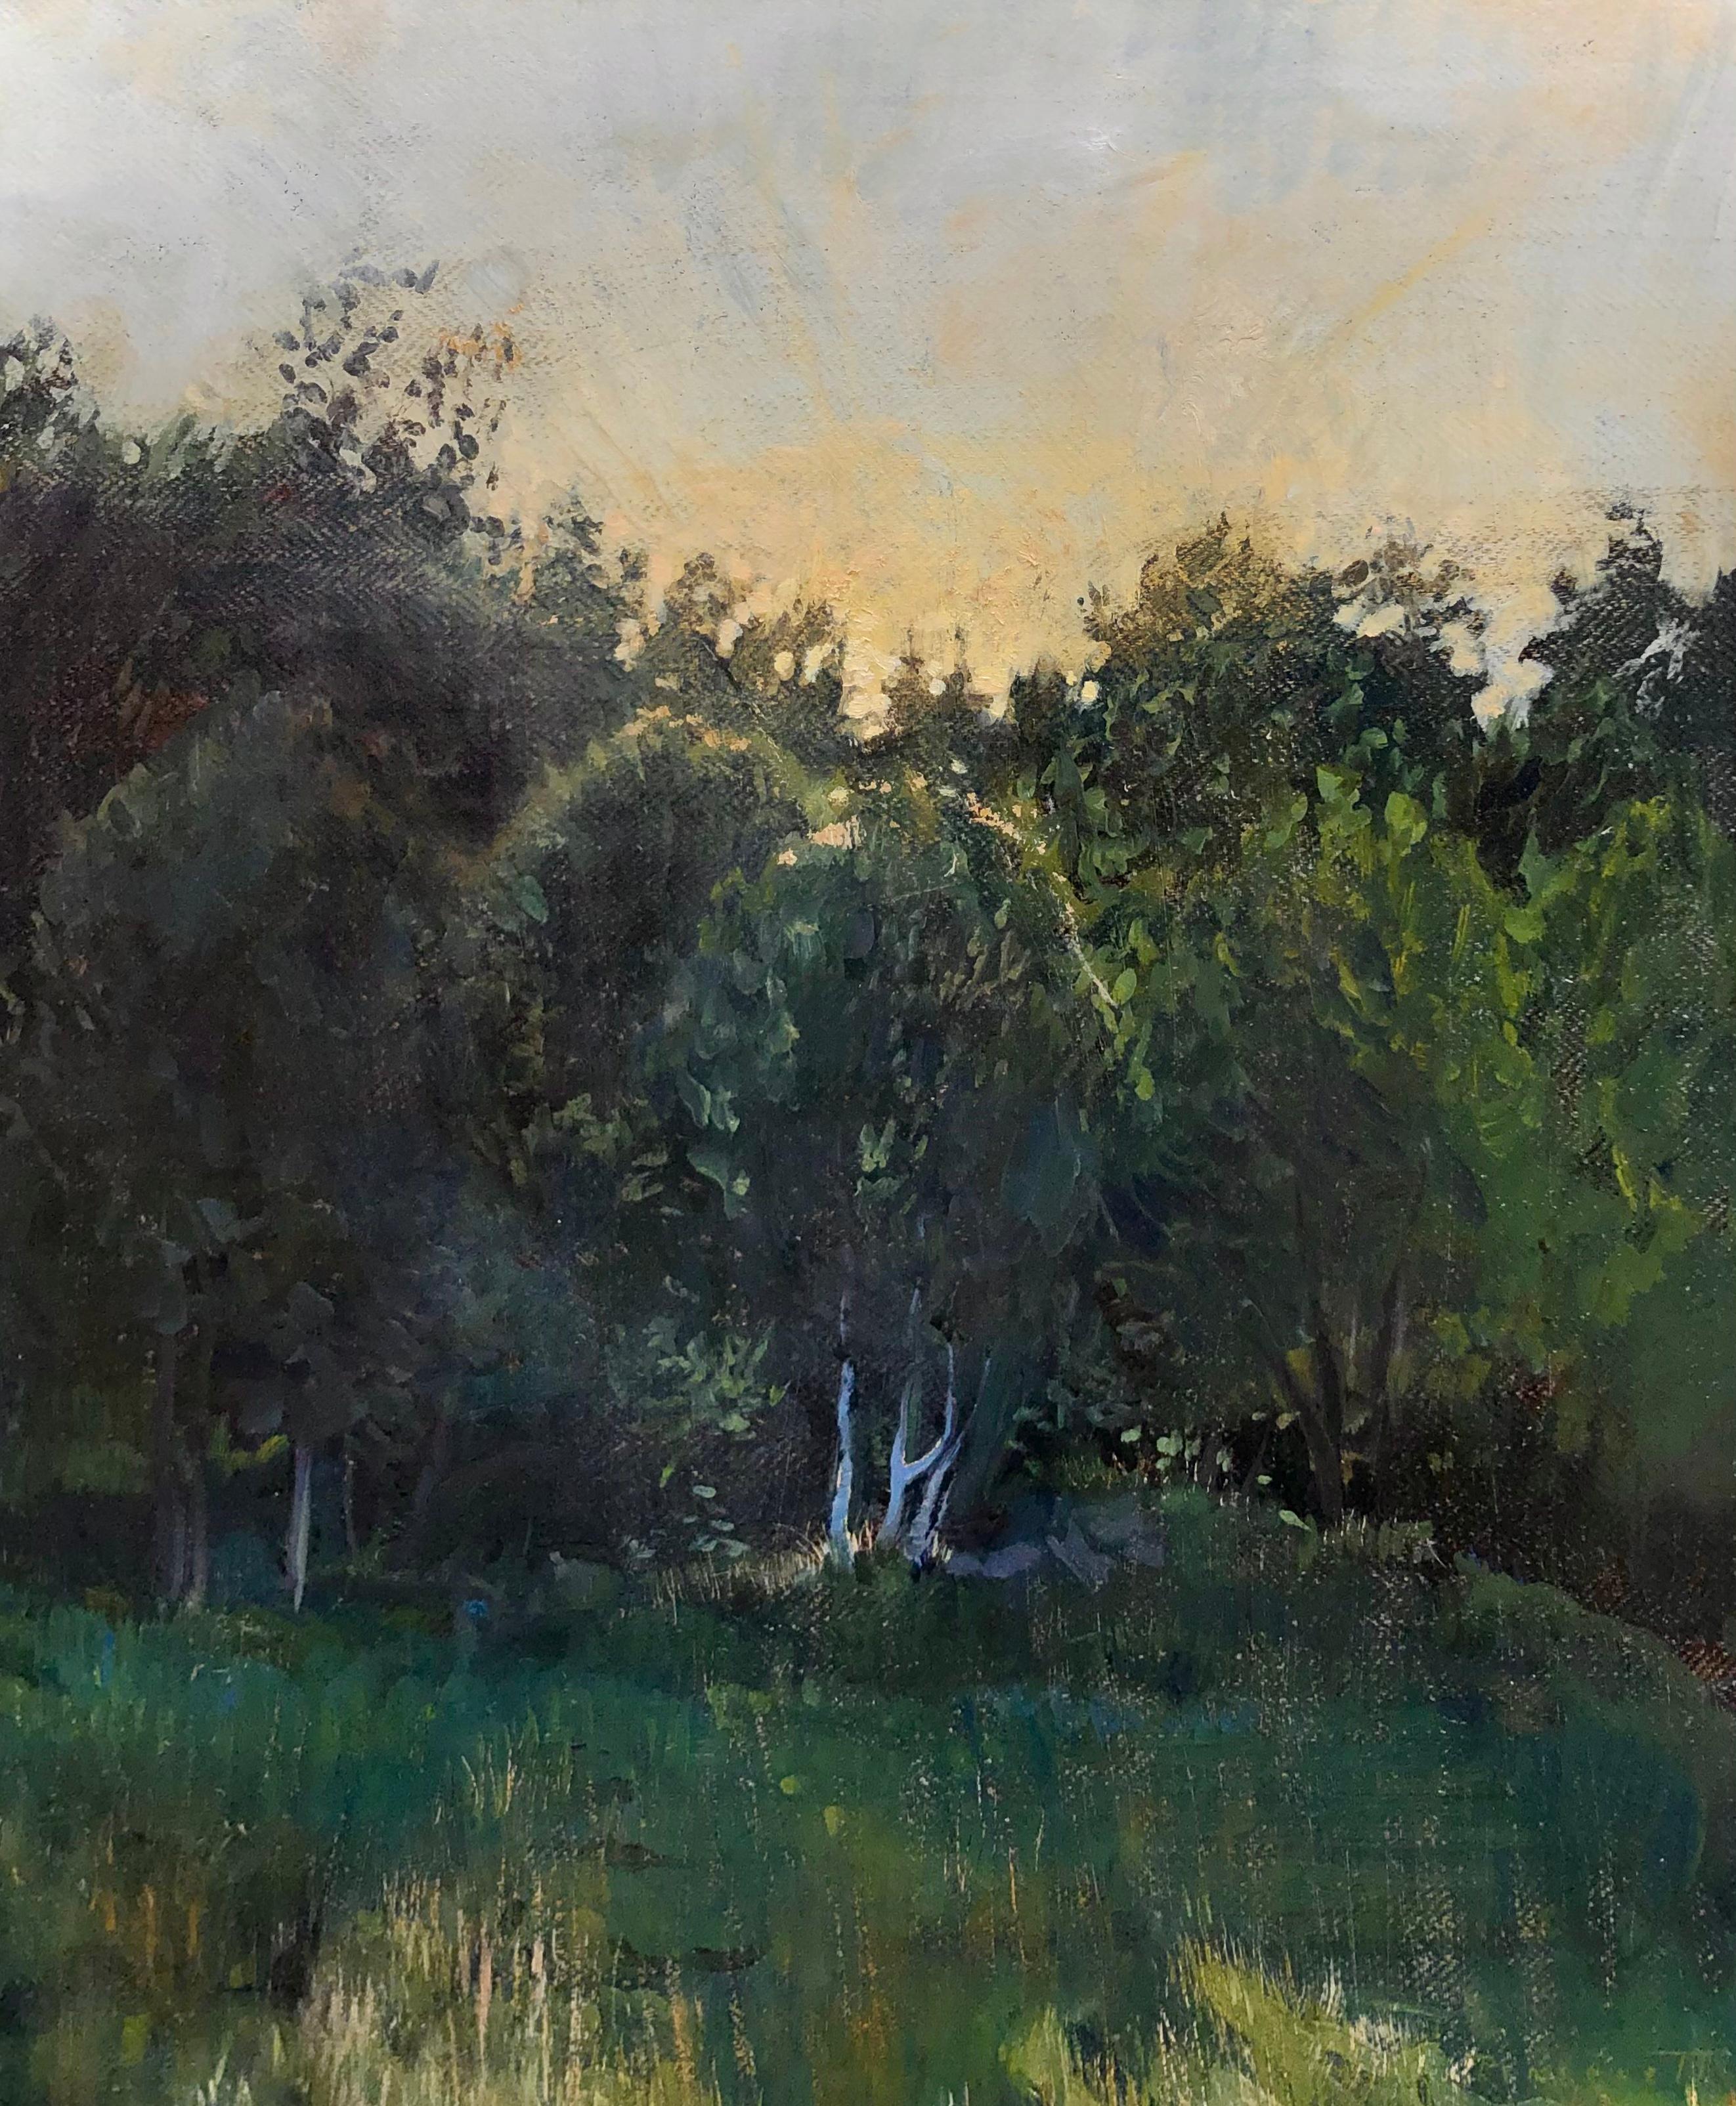 Still-Life Painting Rachel Personett - "Norwegian Sunset" peinture contemporaine tonaliste - le soleil se couche au-delà des arbres verts